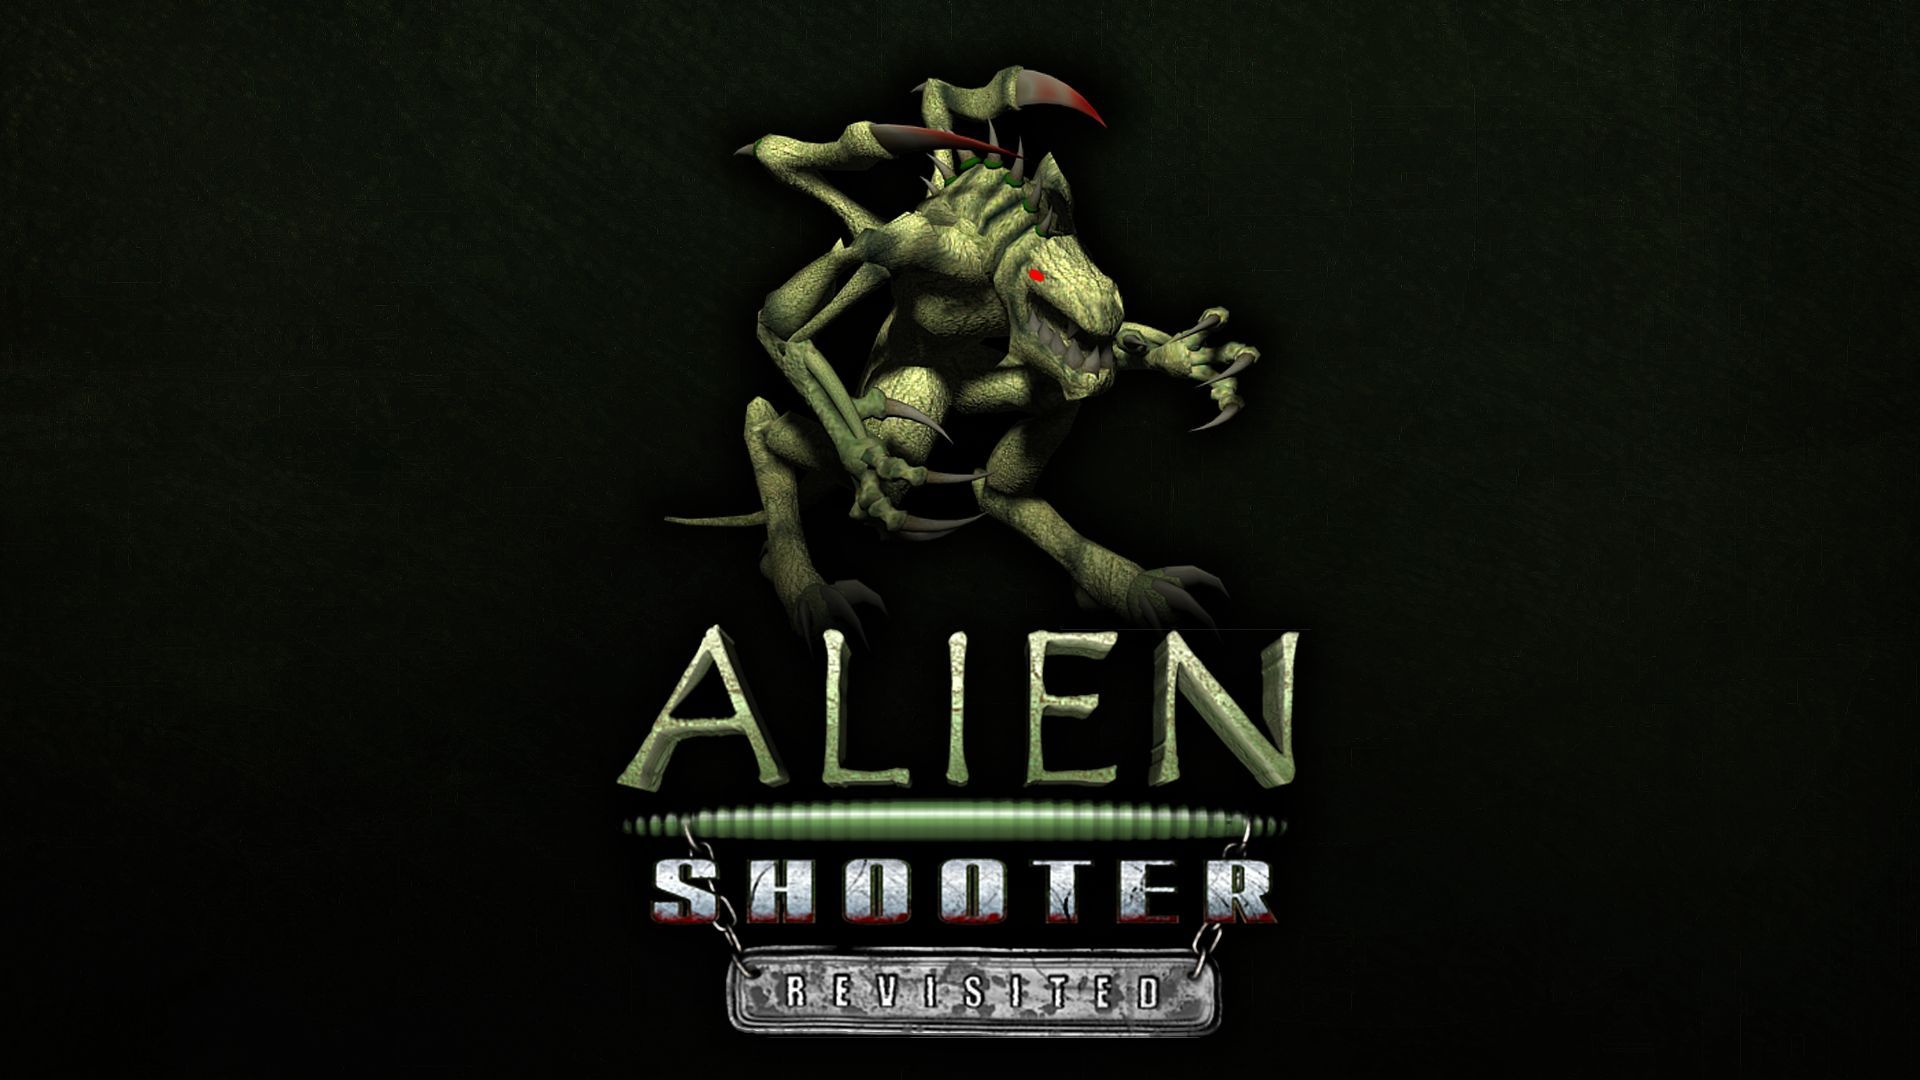 Alien shooter reloaded steam фото 108